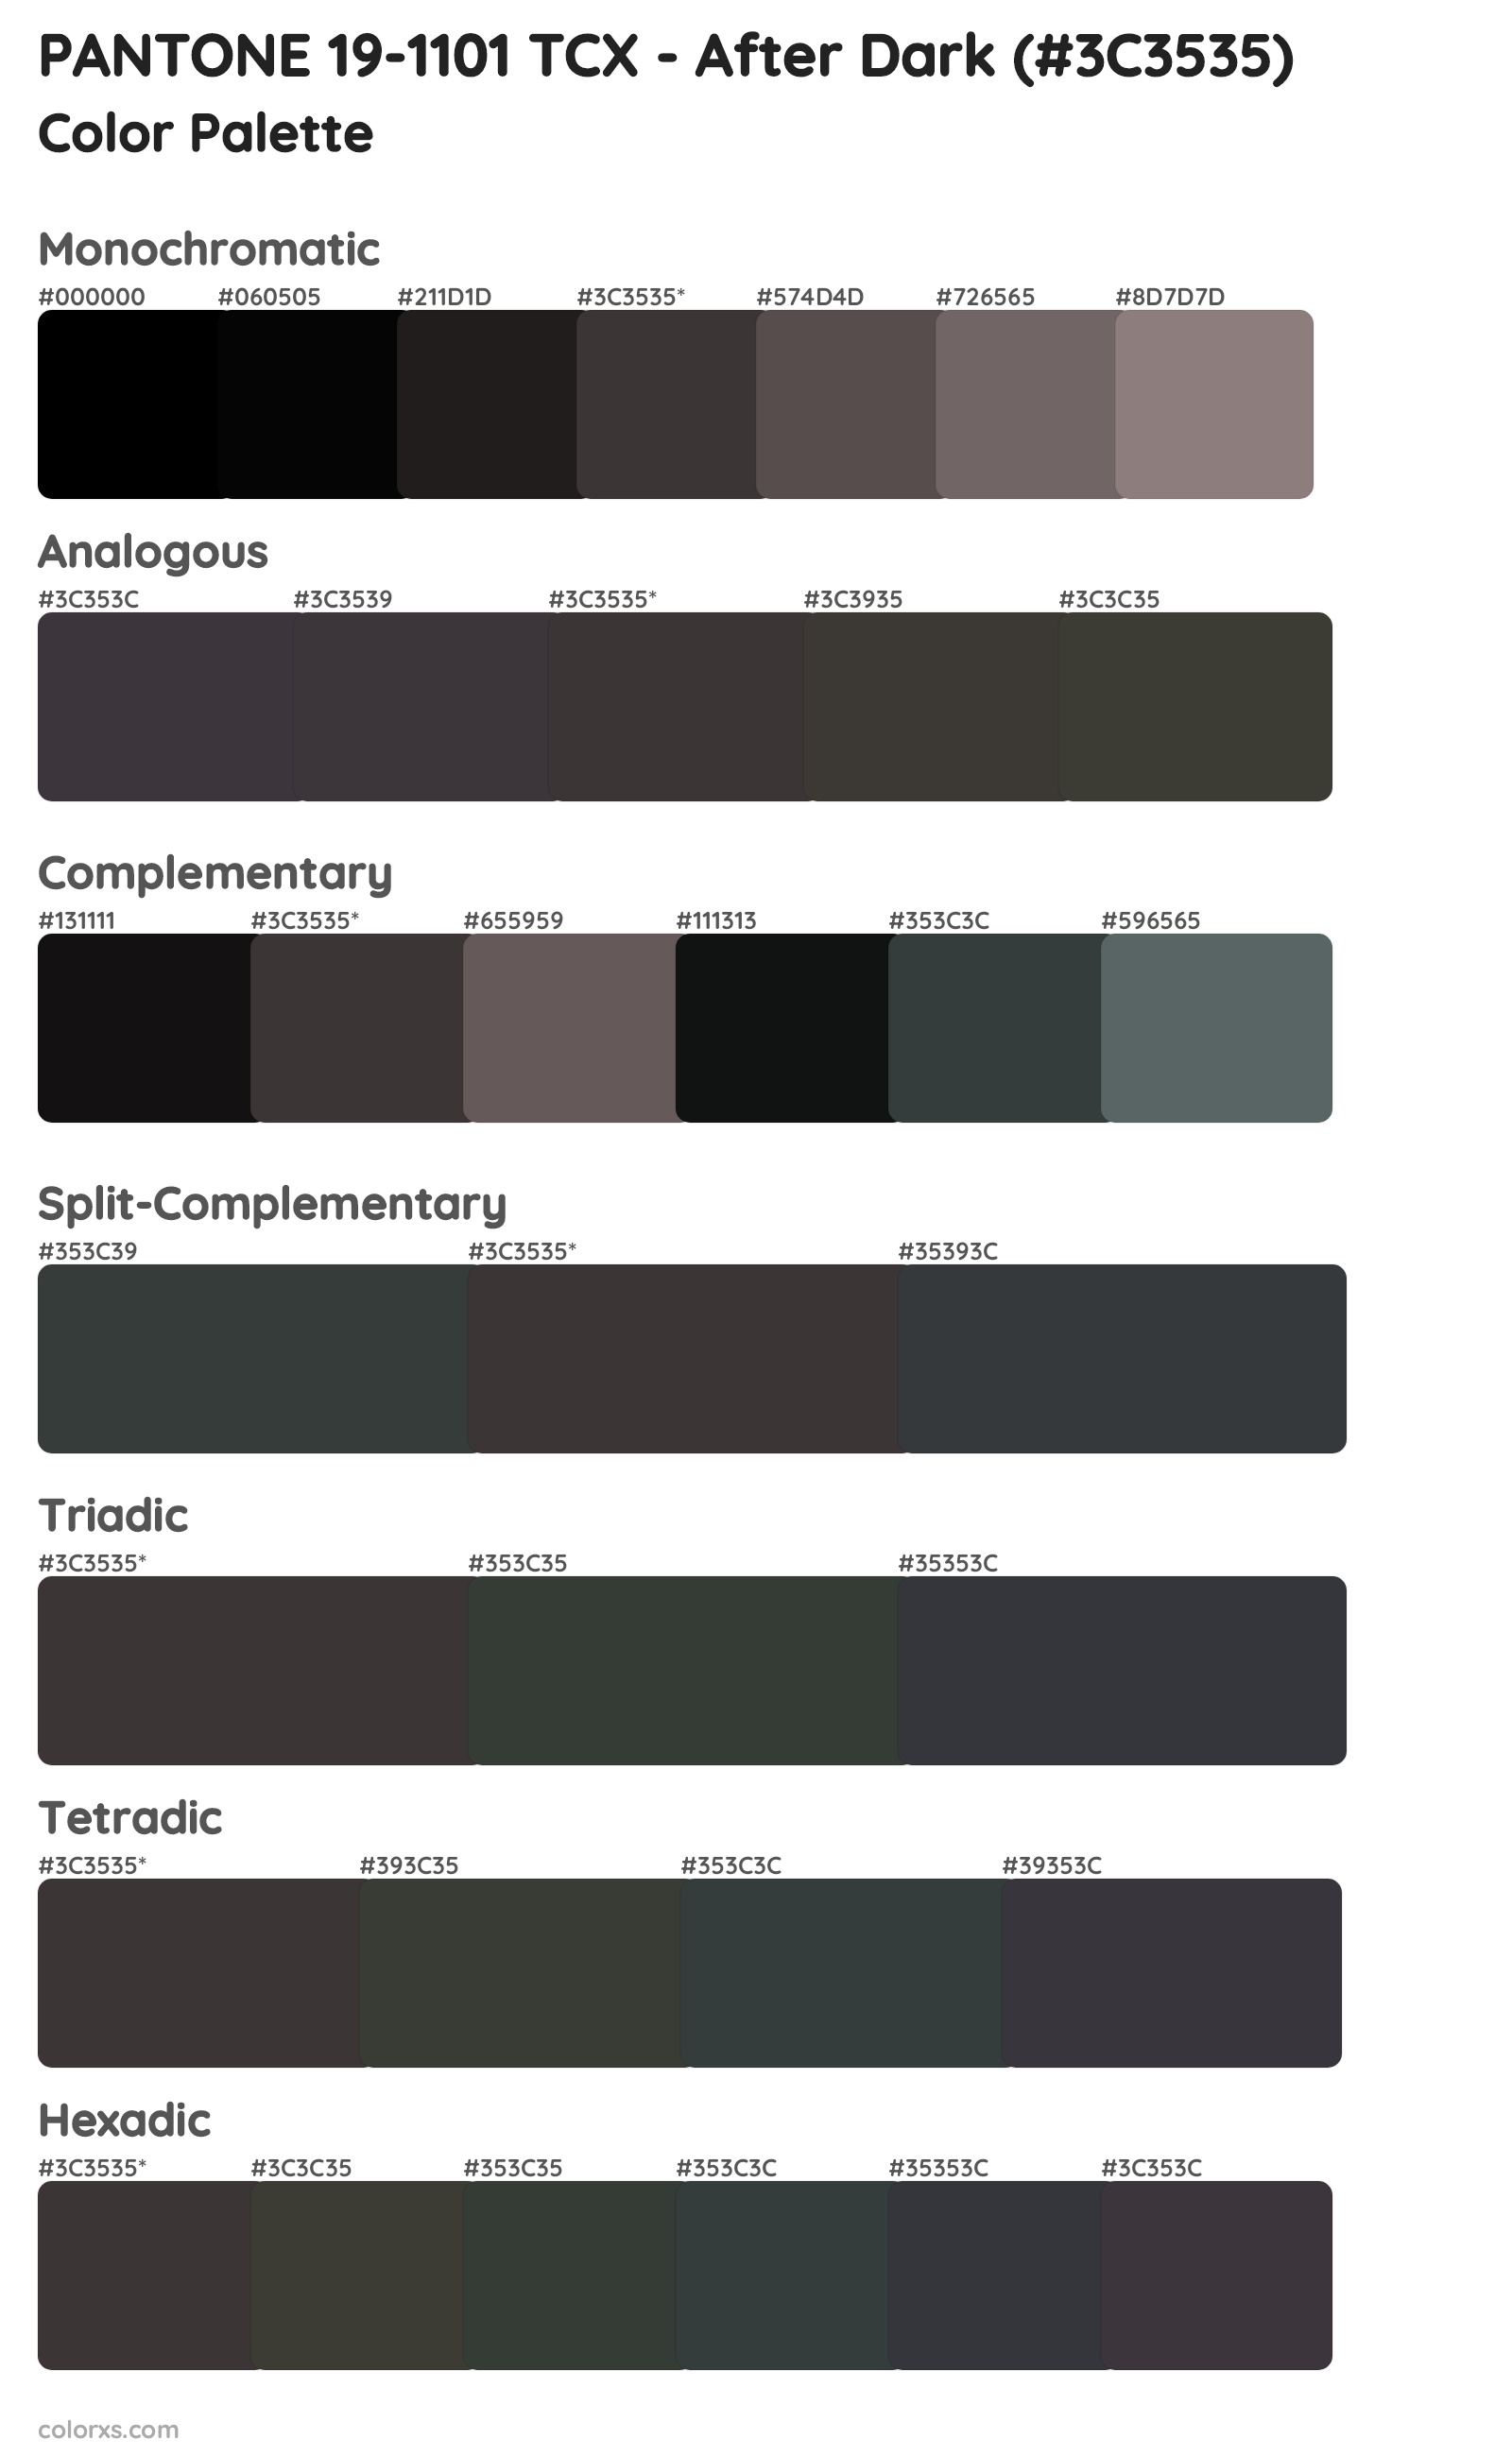 PANTONE 19-1101 TCX - After Dark Color Scheme Palettes